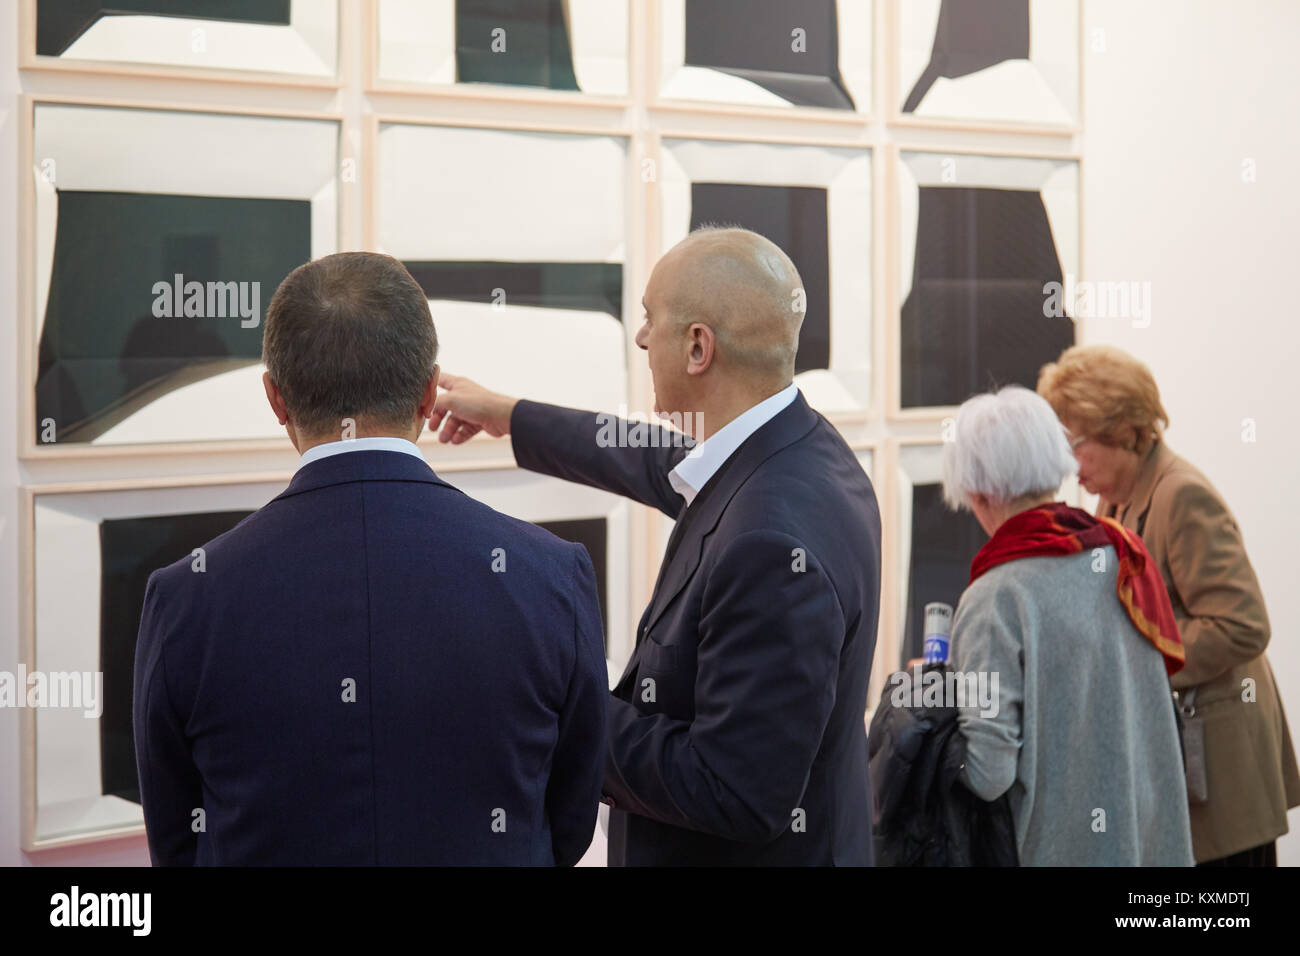 Torino - 2 novembre: persone che guardano i dipinti in colori bianco e nero durante Artissima, fiera di arte contemporanea apertura il 2 novembre 2017 a Torino Foto Stock